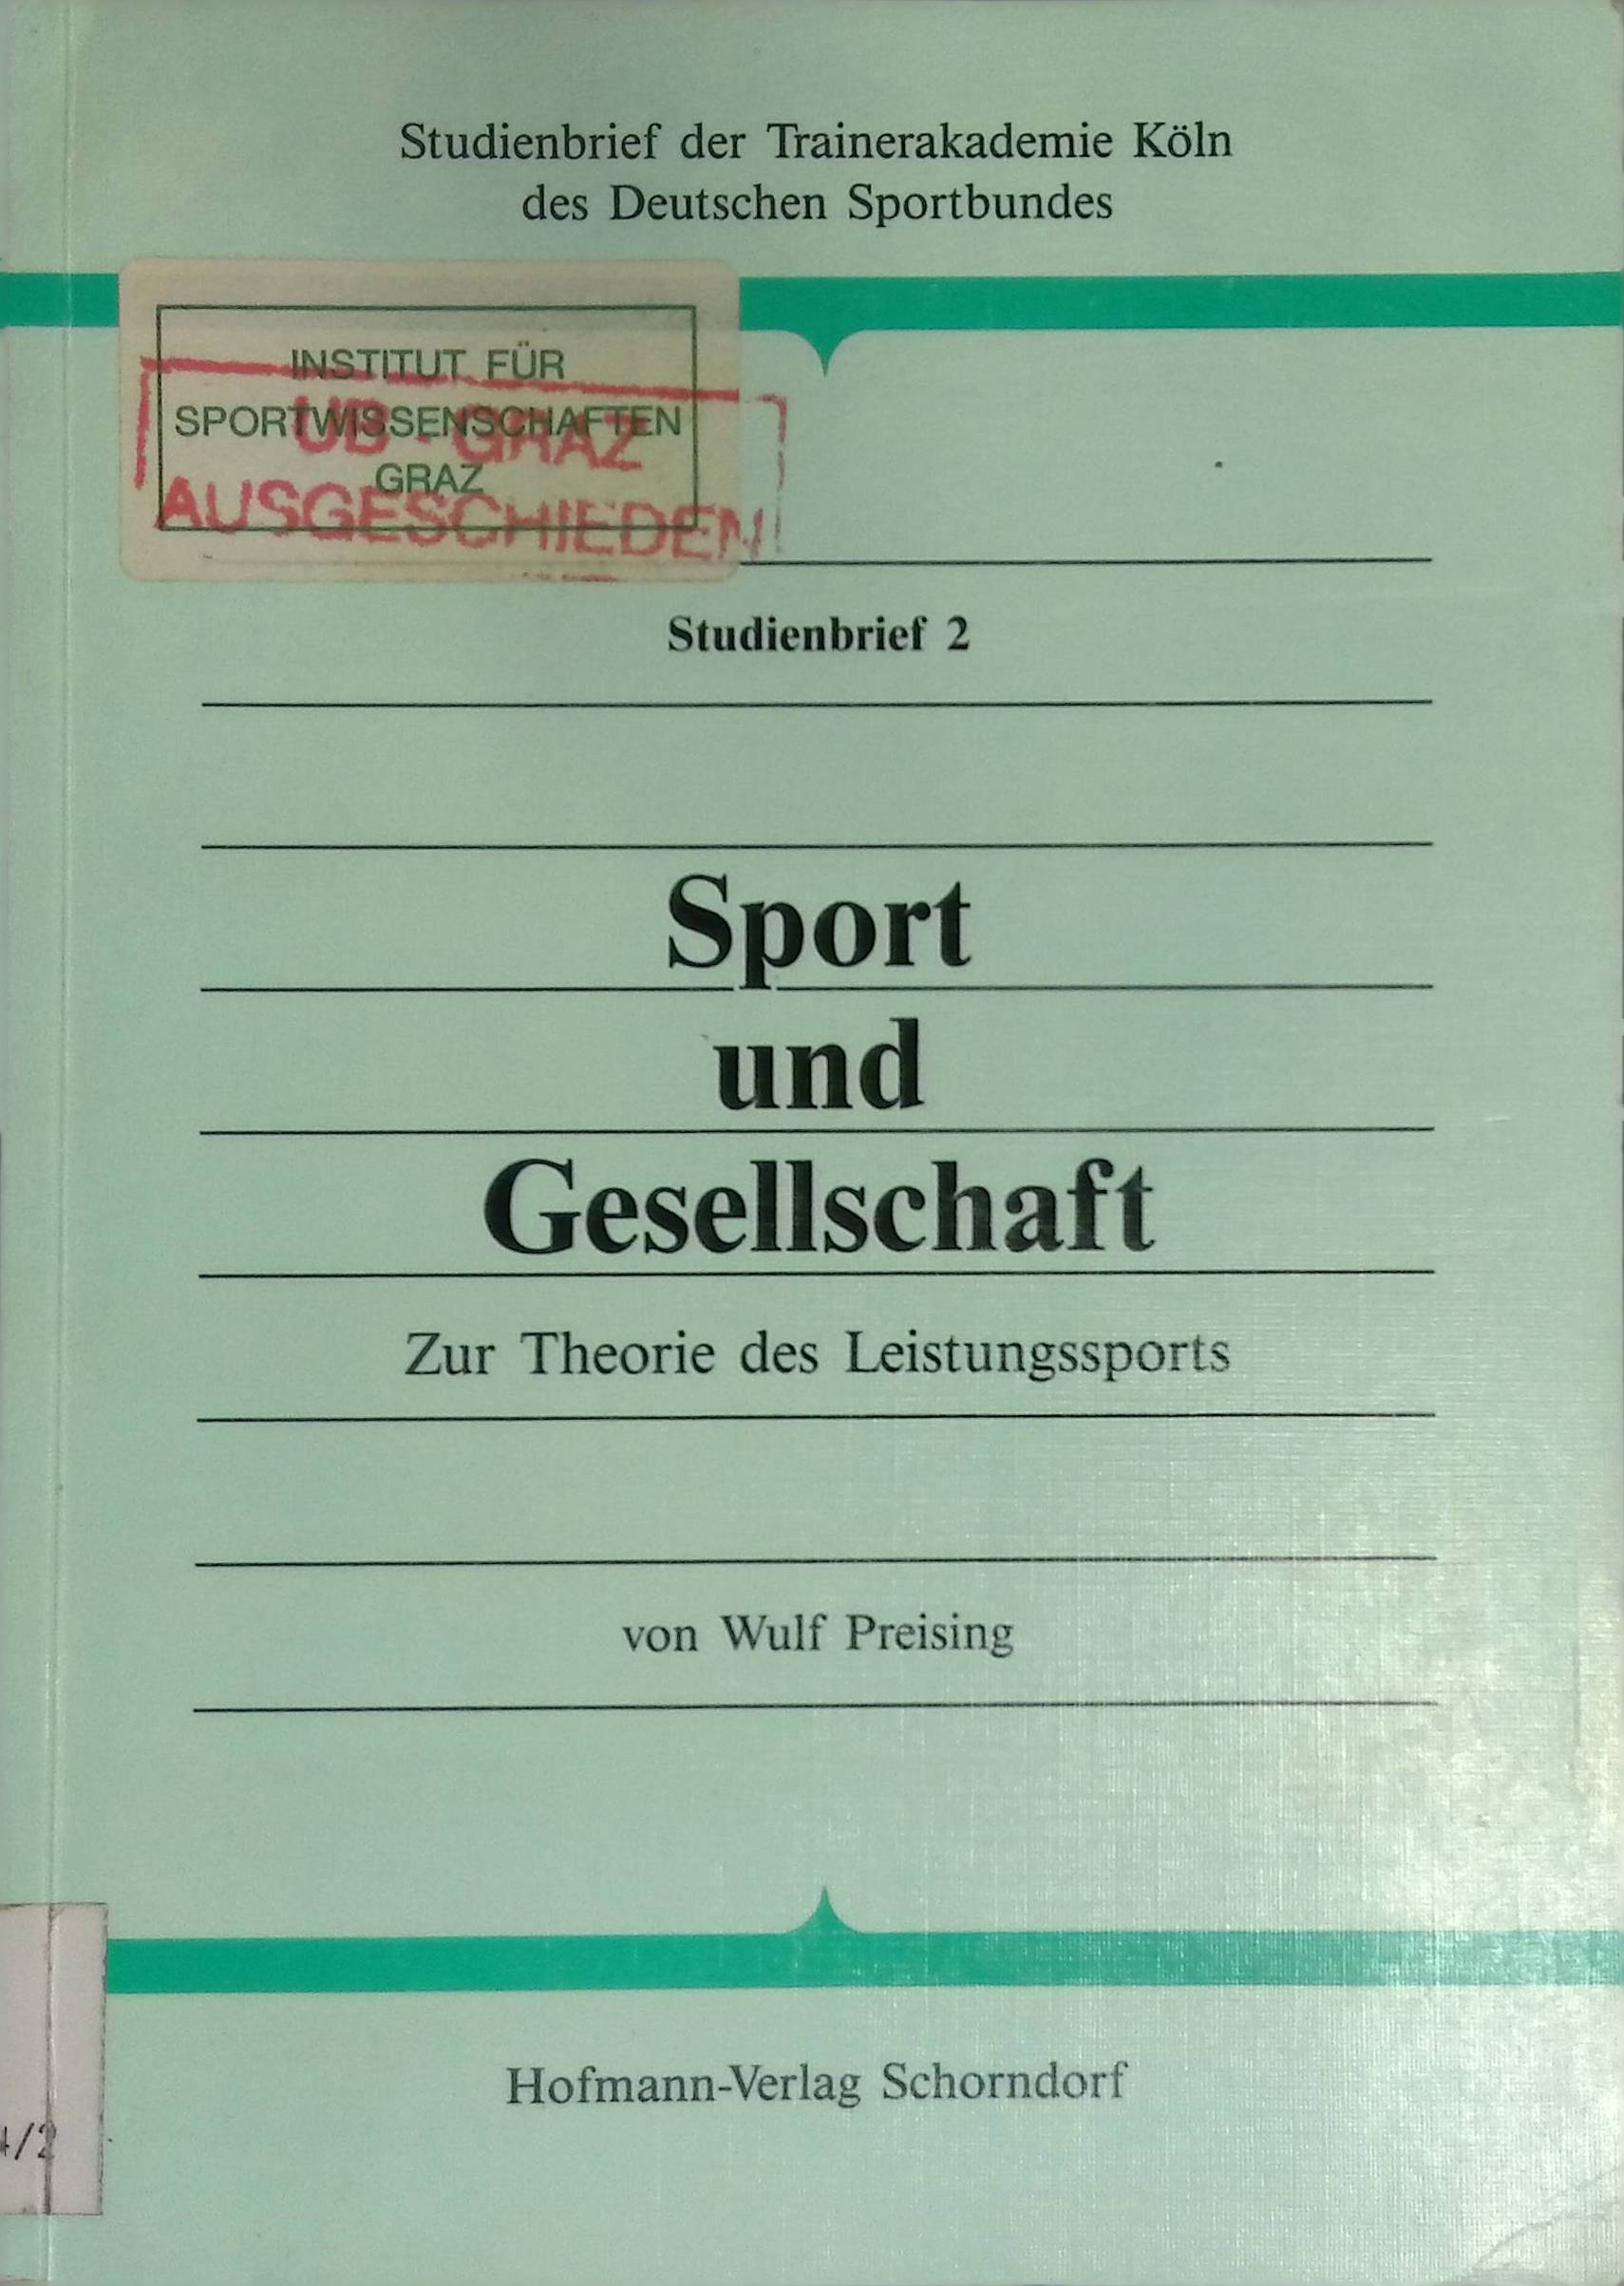 Sport und Gesellschaft : zur Theorie des Leistungssports. Studienbrief der Trainerakademie Köln des Deutschen Sportbundes ; Studienbrief 2 - Preising, Wulf